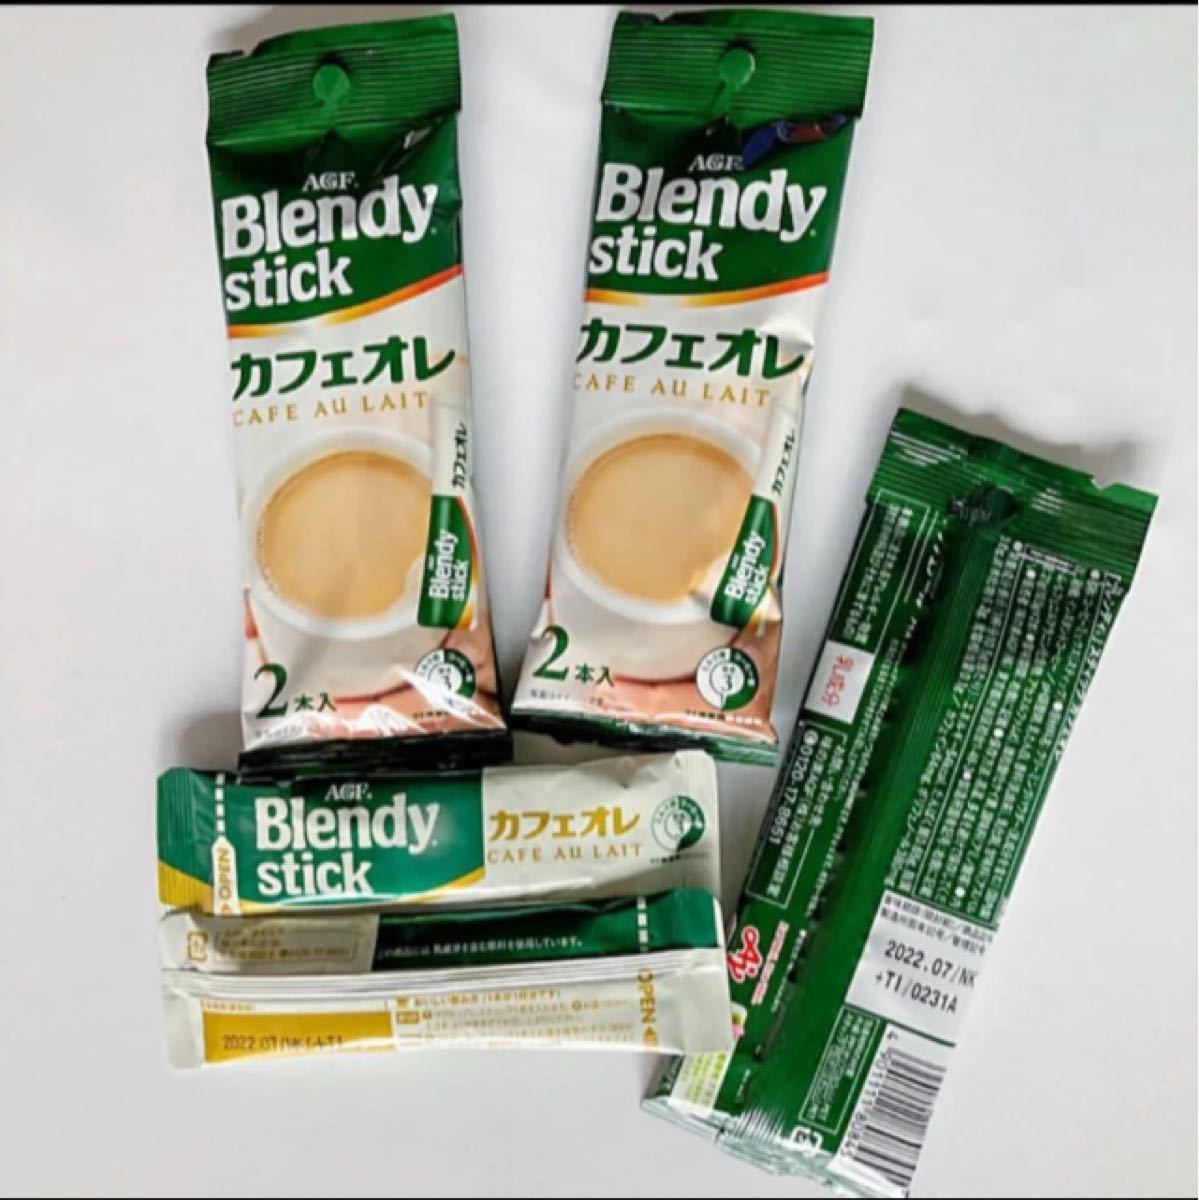 ［まとめ売り］AGF Blendy stick「ブレンディ」スティック 1袋 2本入 4種類 18袋  計.36本